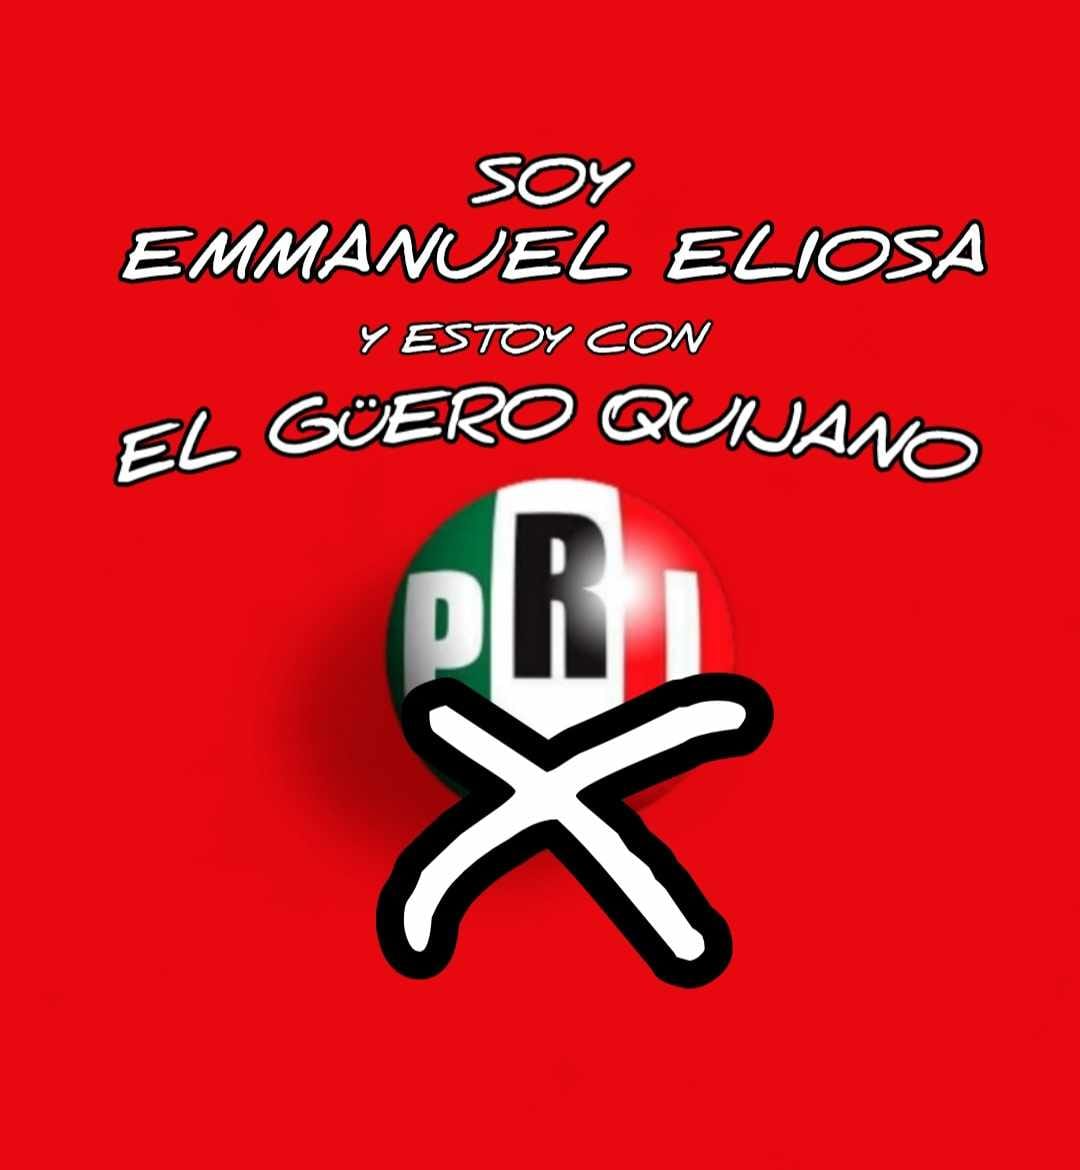 Los invito a sumarse a @Luis_GQM
Y que #JuntosSigamosTrabajando x una mejor alcaldía.

#CDMX 
#LaMagdalenaContreras